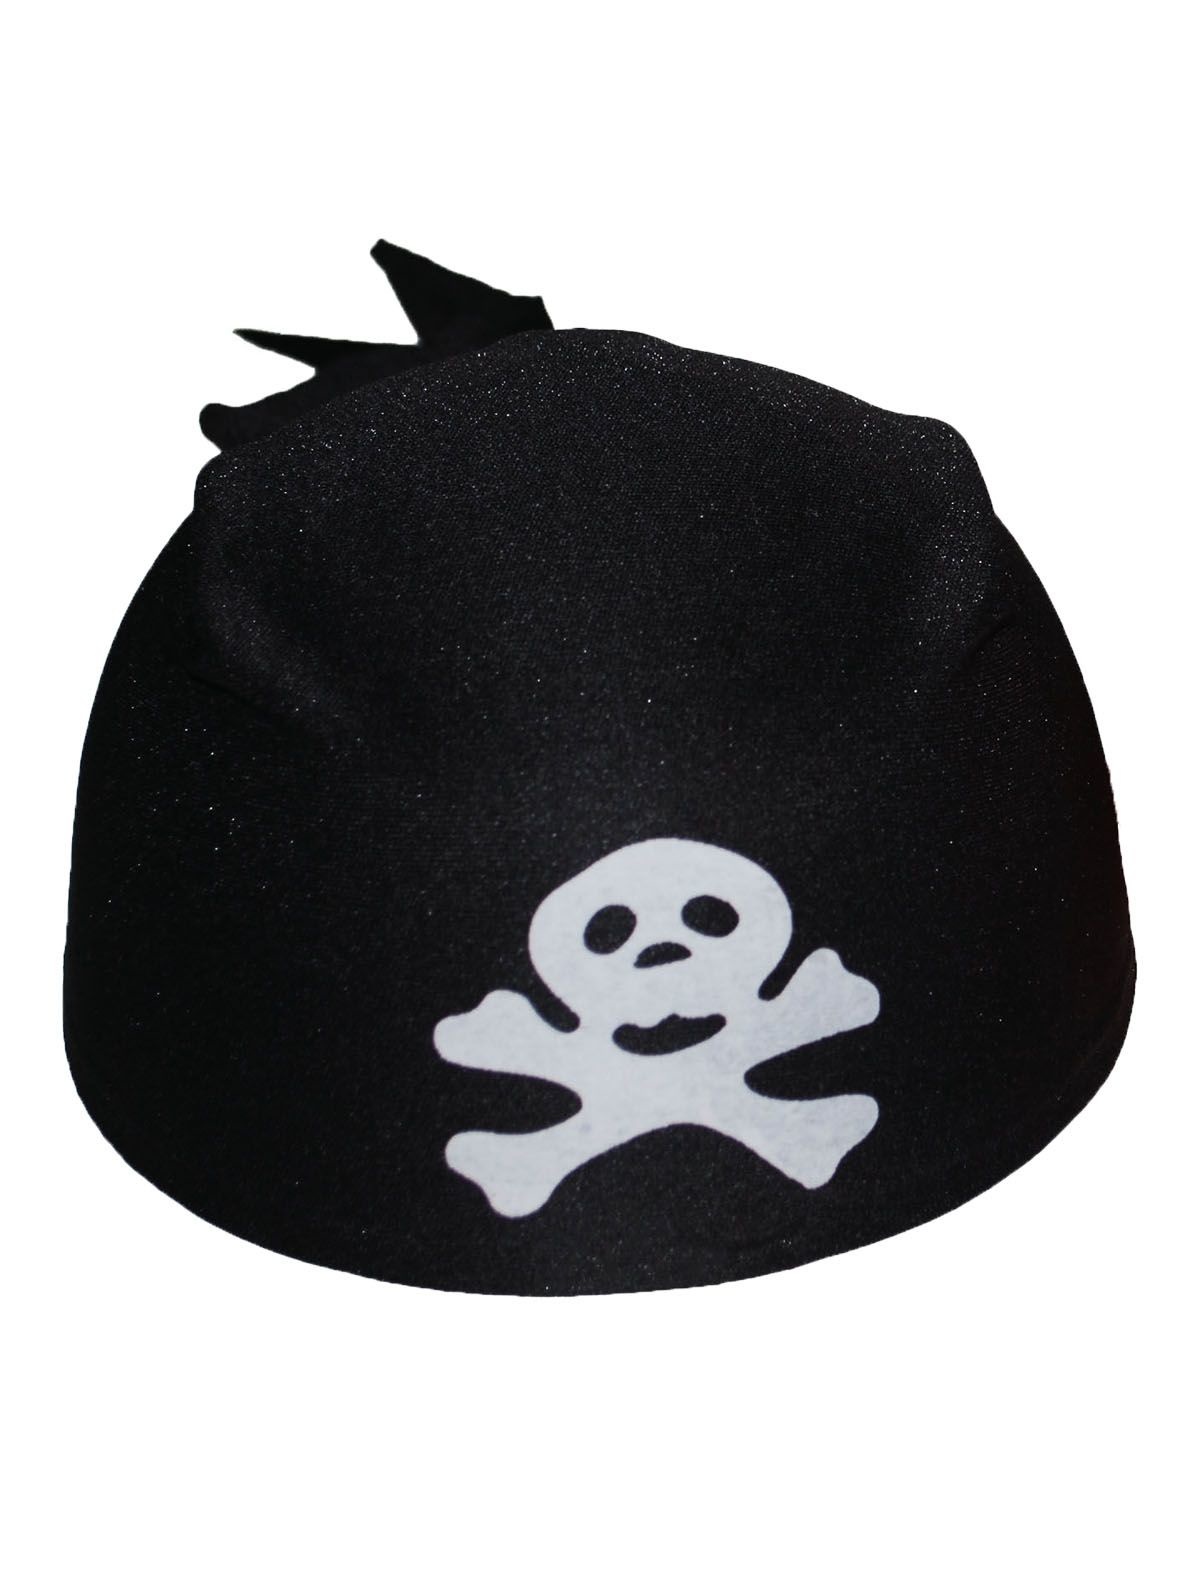 ESPA - Bruine nepleren piraten hoed voor volwassenen - Hoeden > Overige